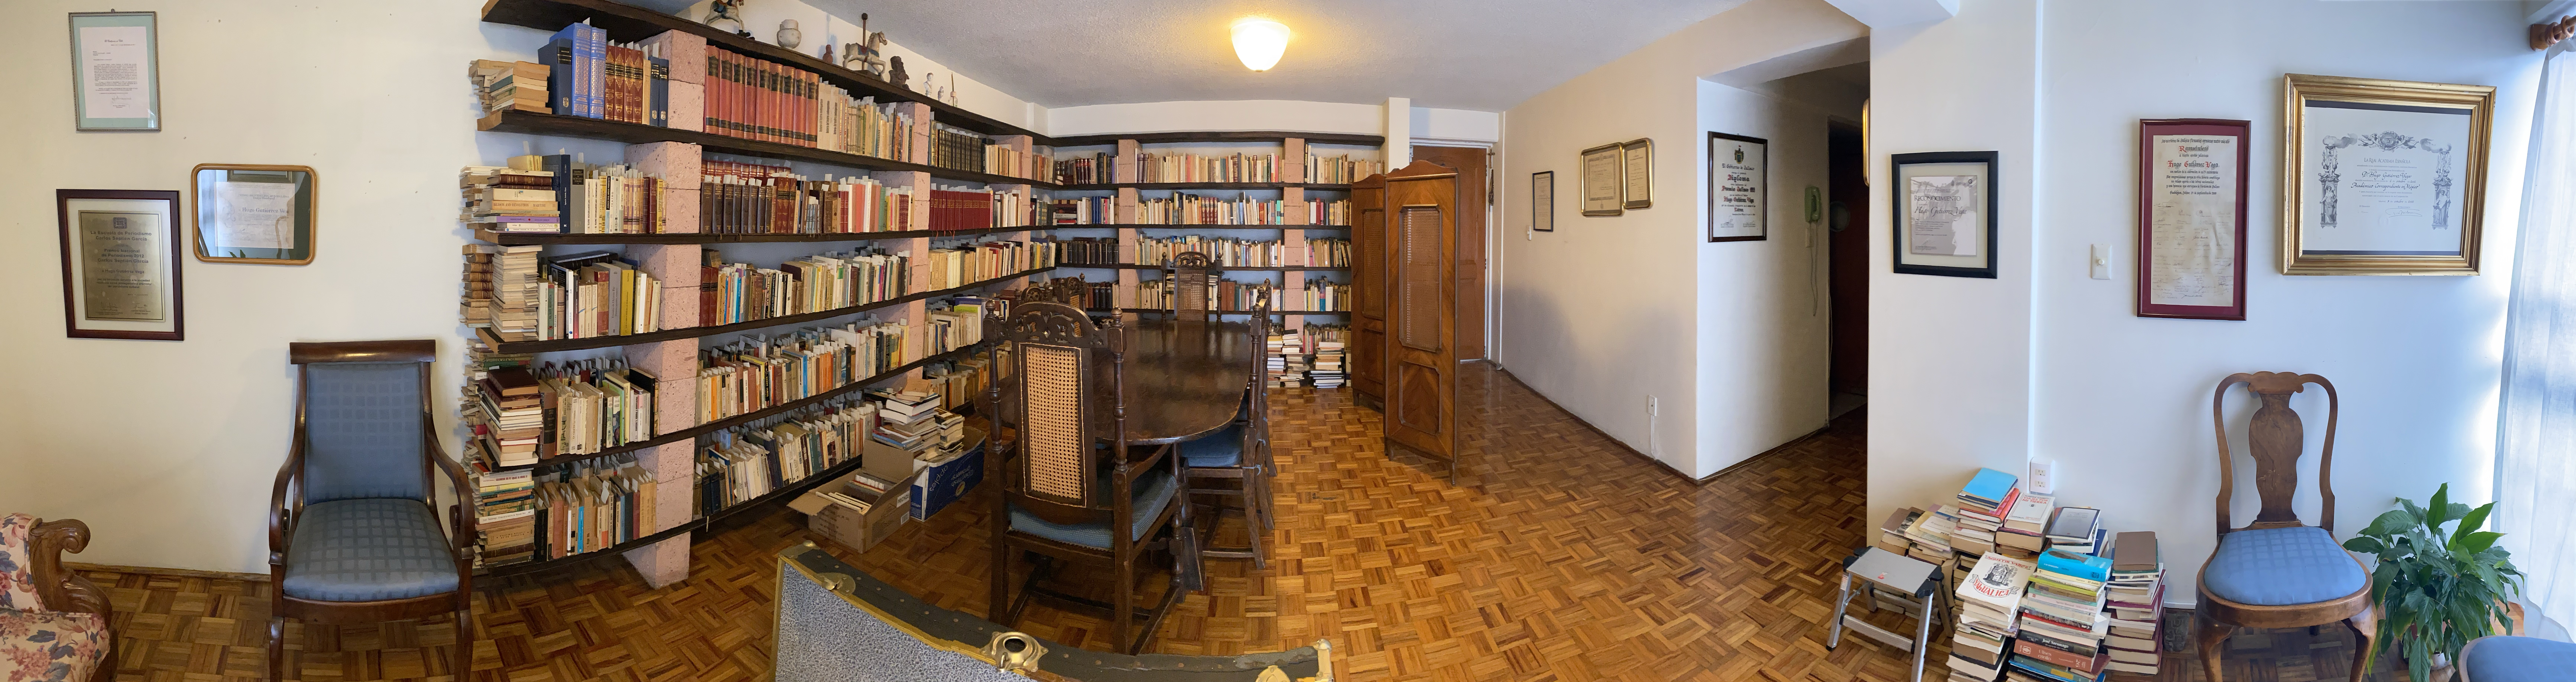 Biblioteca personal del Dr. Gutiérrez Vega en Copilco, Ciudad de México 